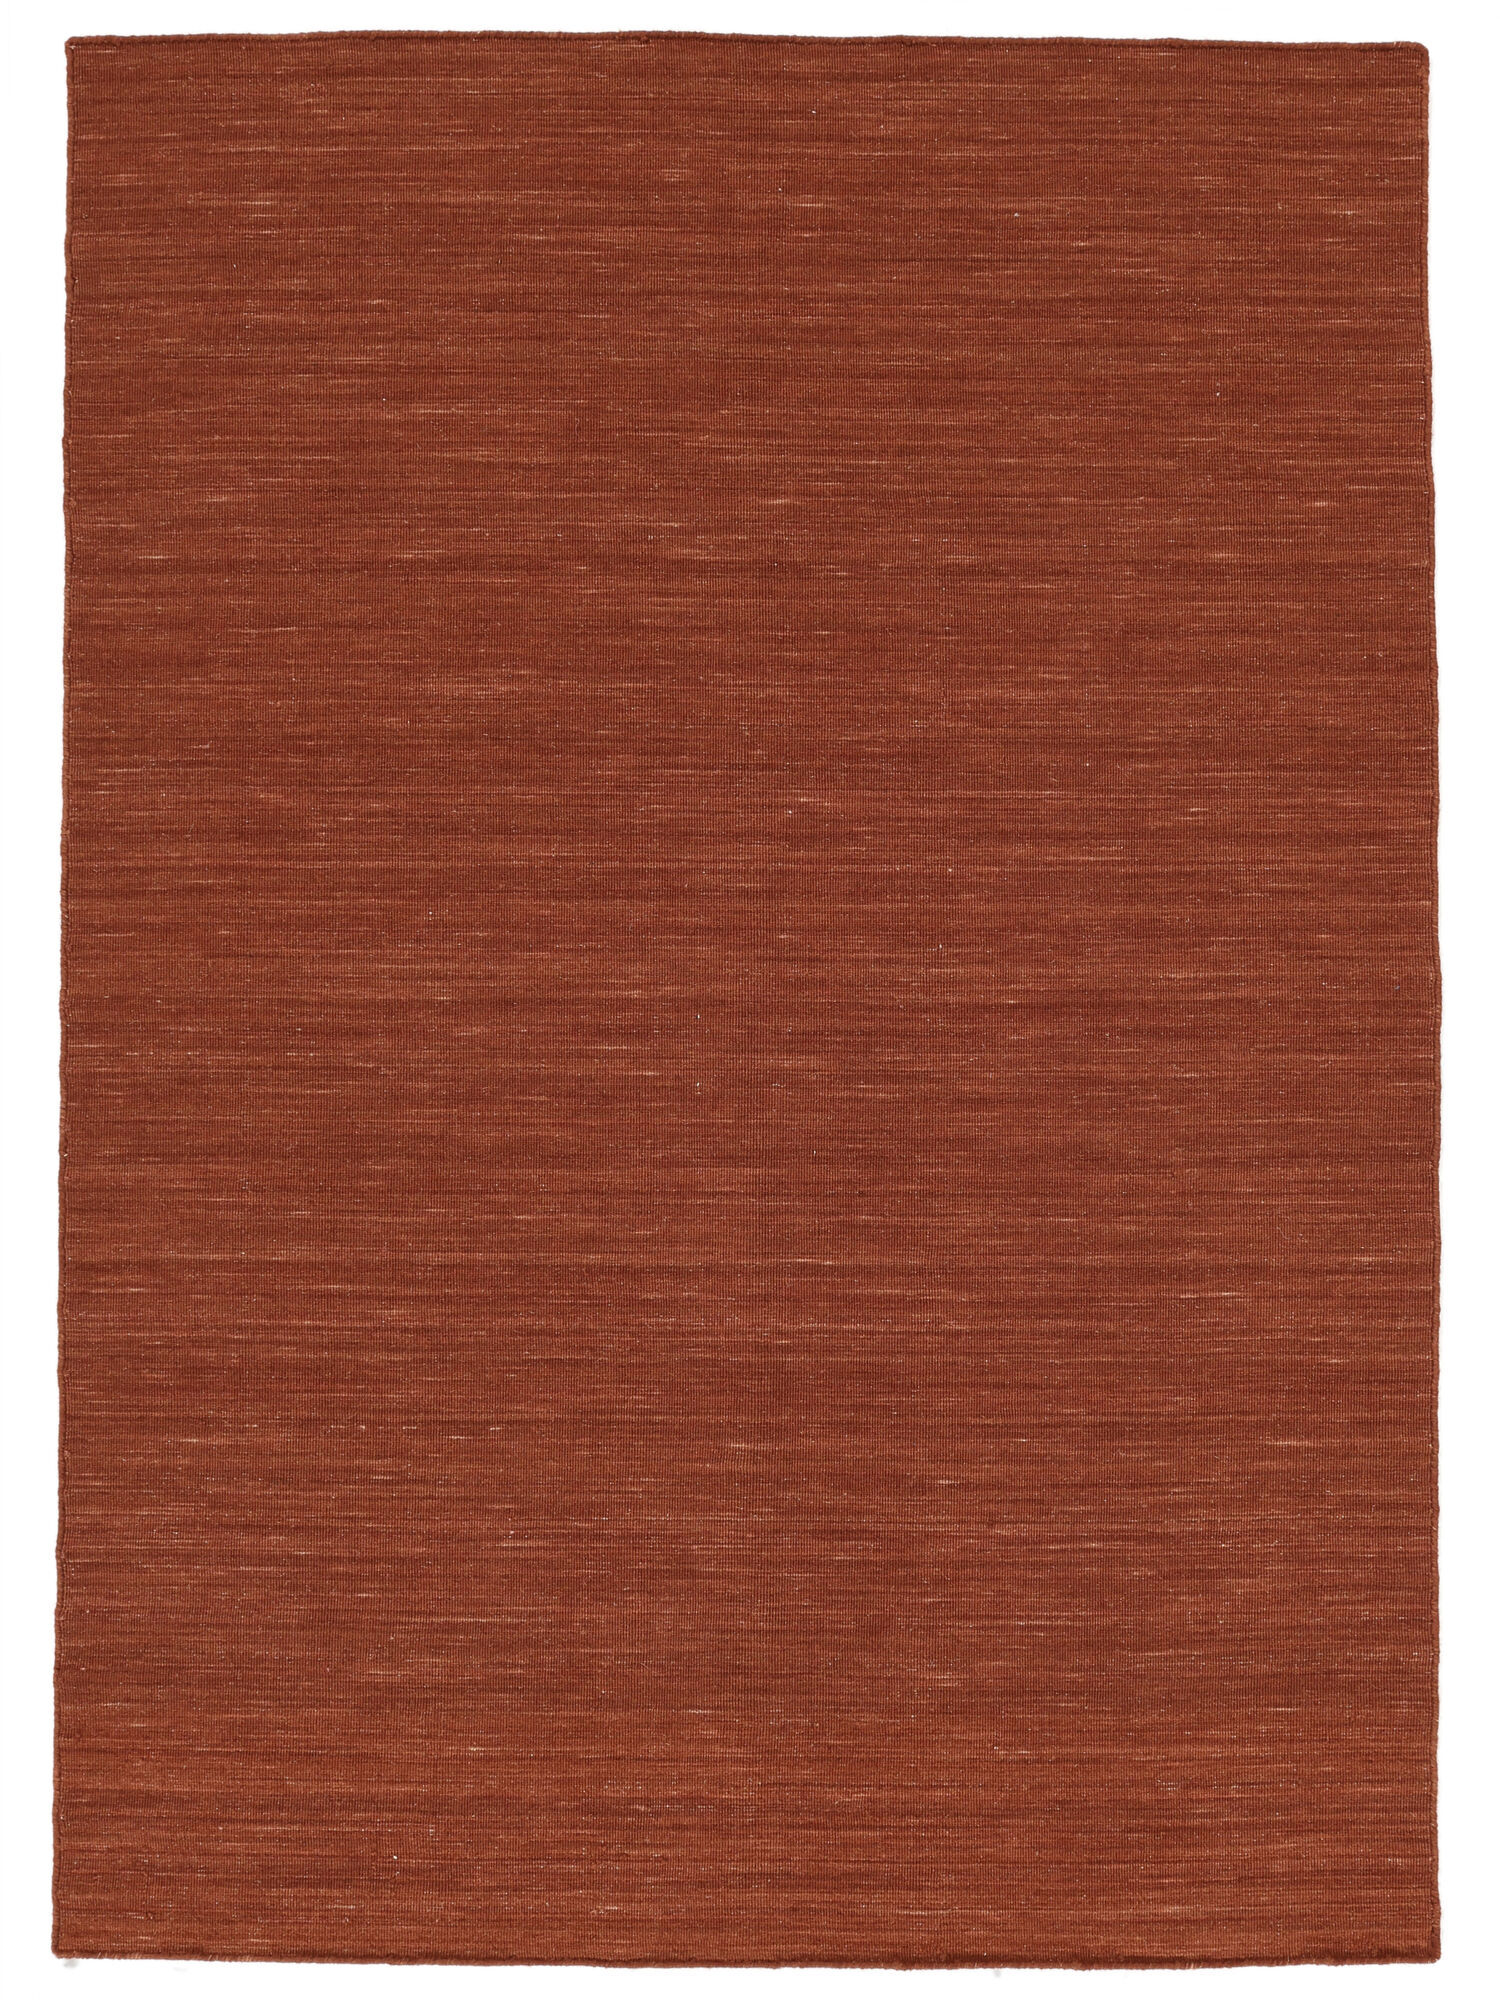 RugVista Kilim loom Tappeto - Rosso ruggine 200x300